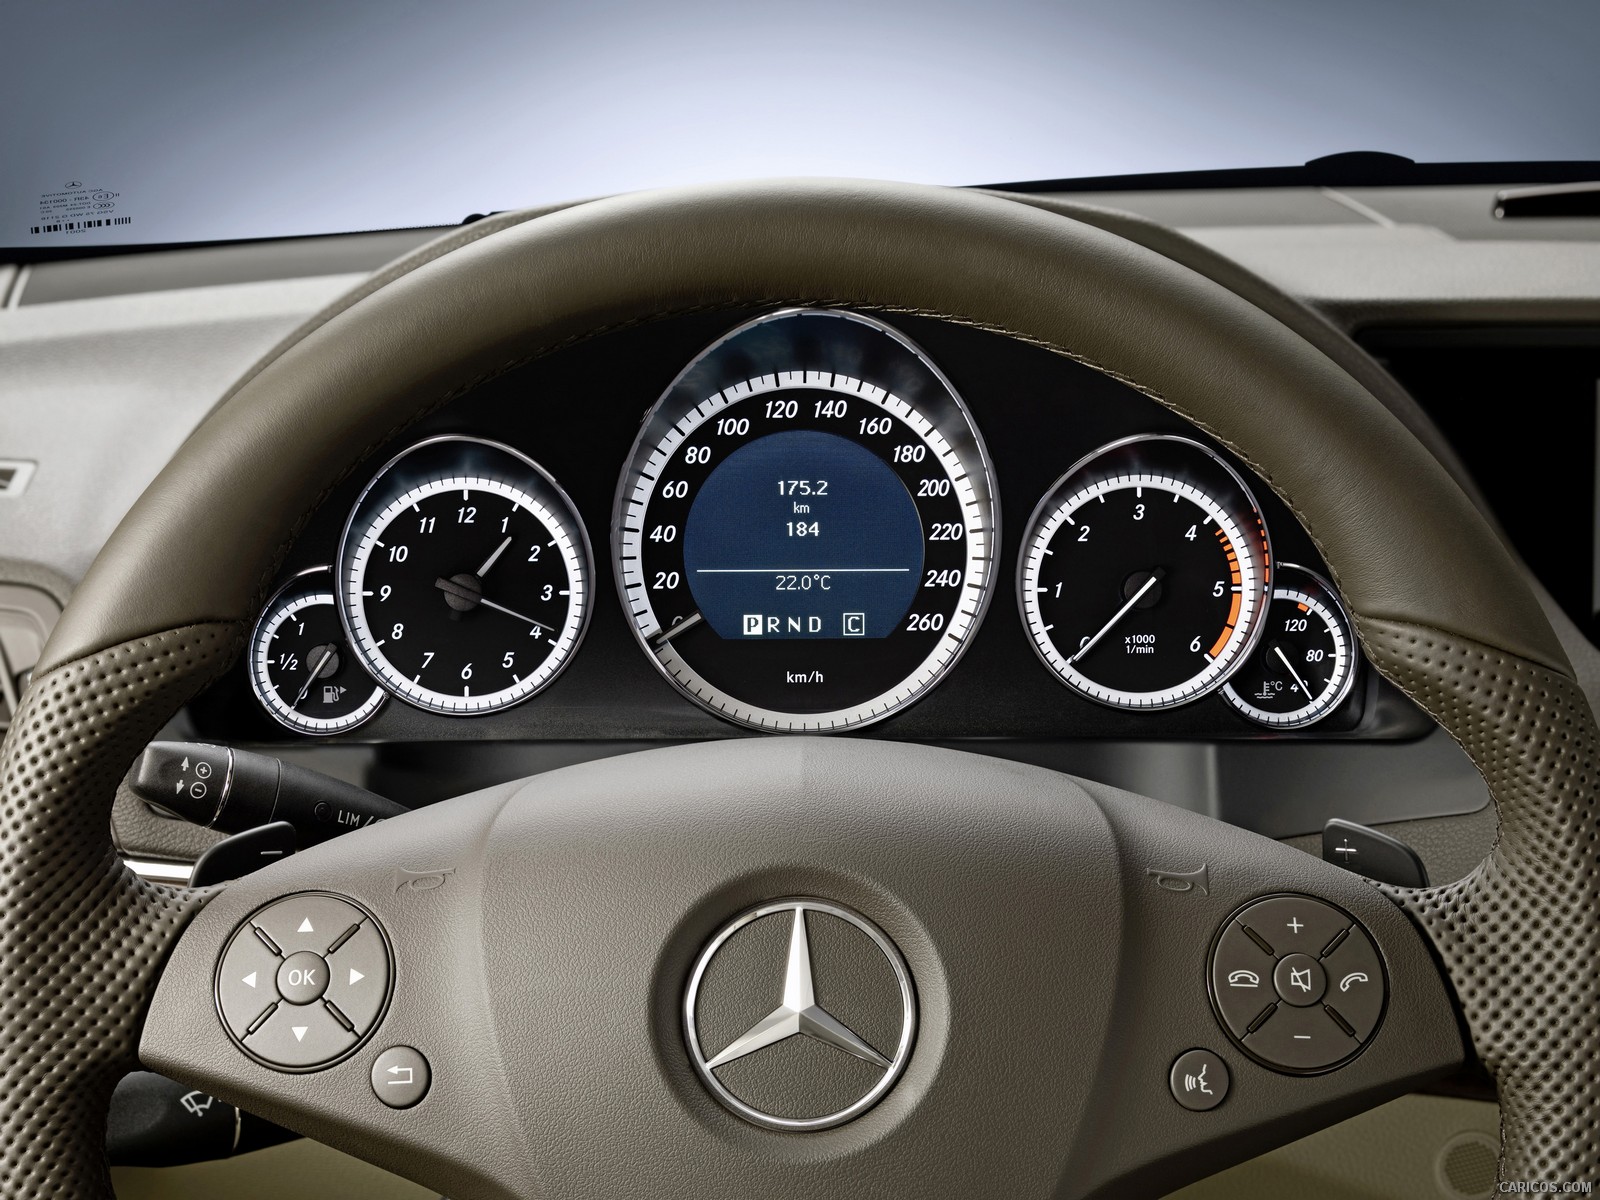 2010 Mercedes-Benz E-Class Coupe - Interior Steering Wheel ...